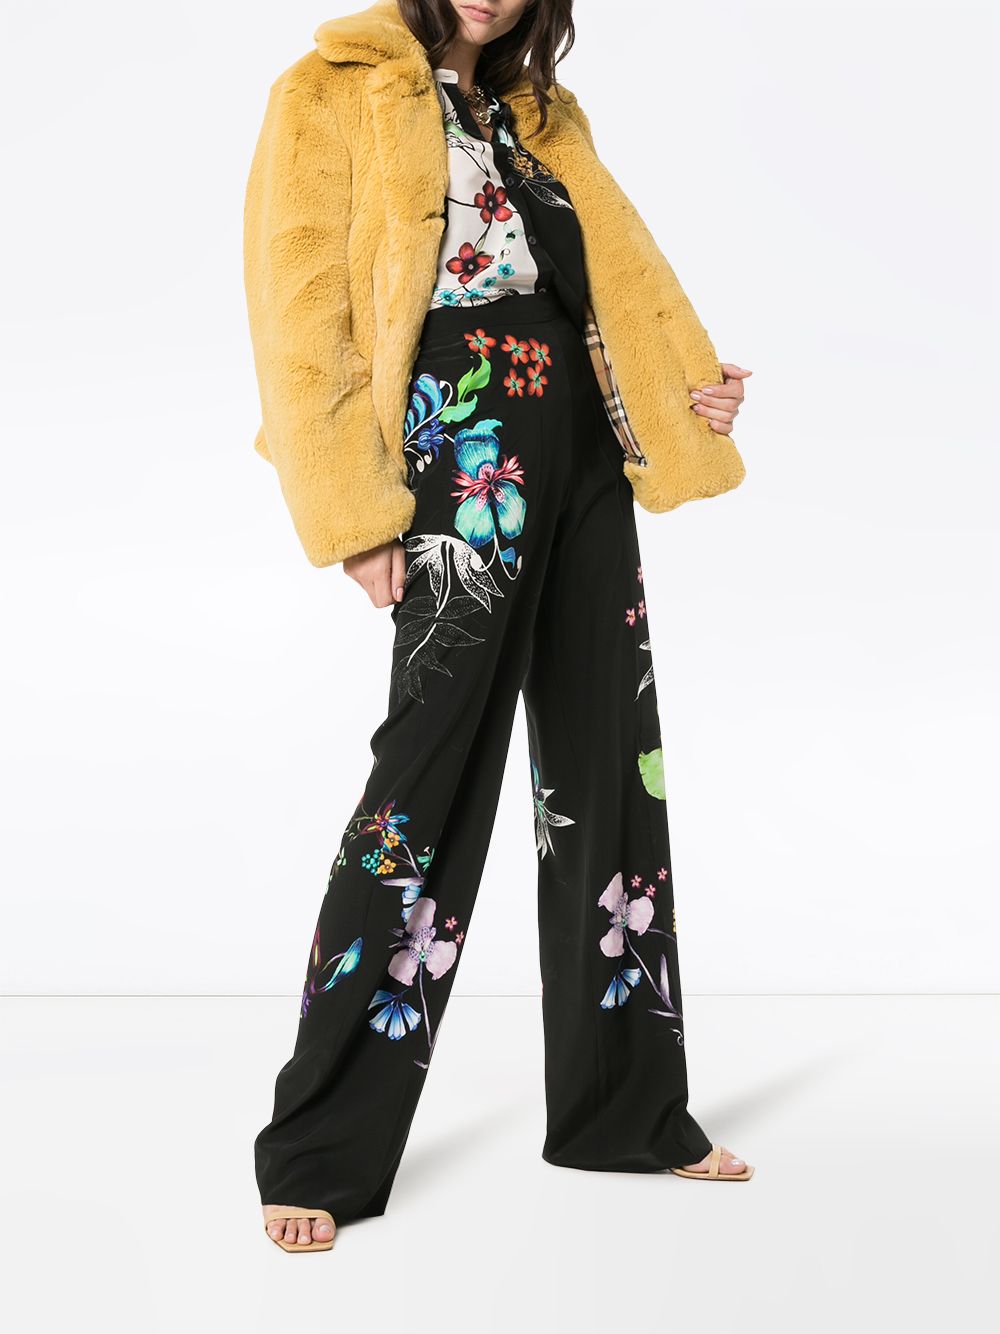 фото Etro широкие брюки с цветочным принтом